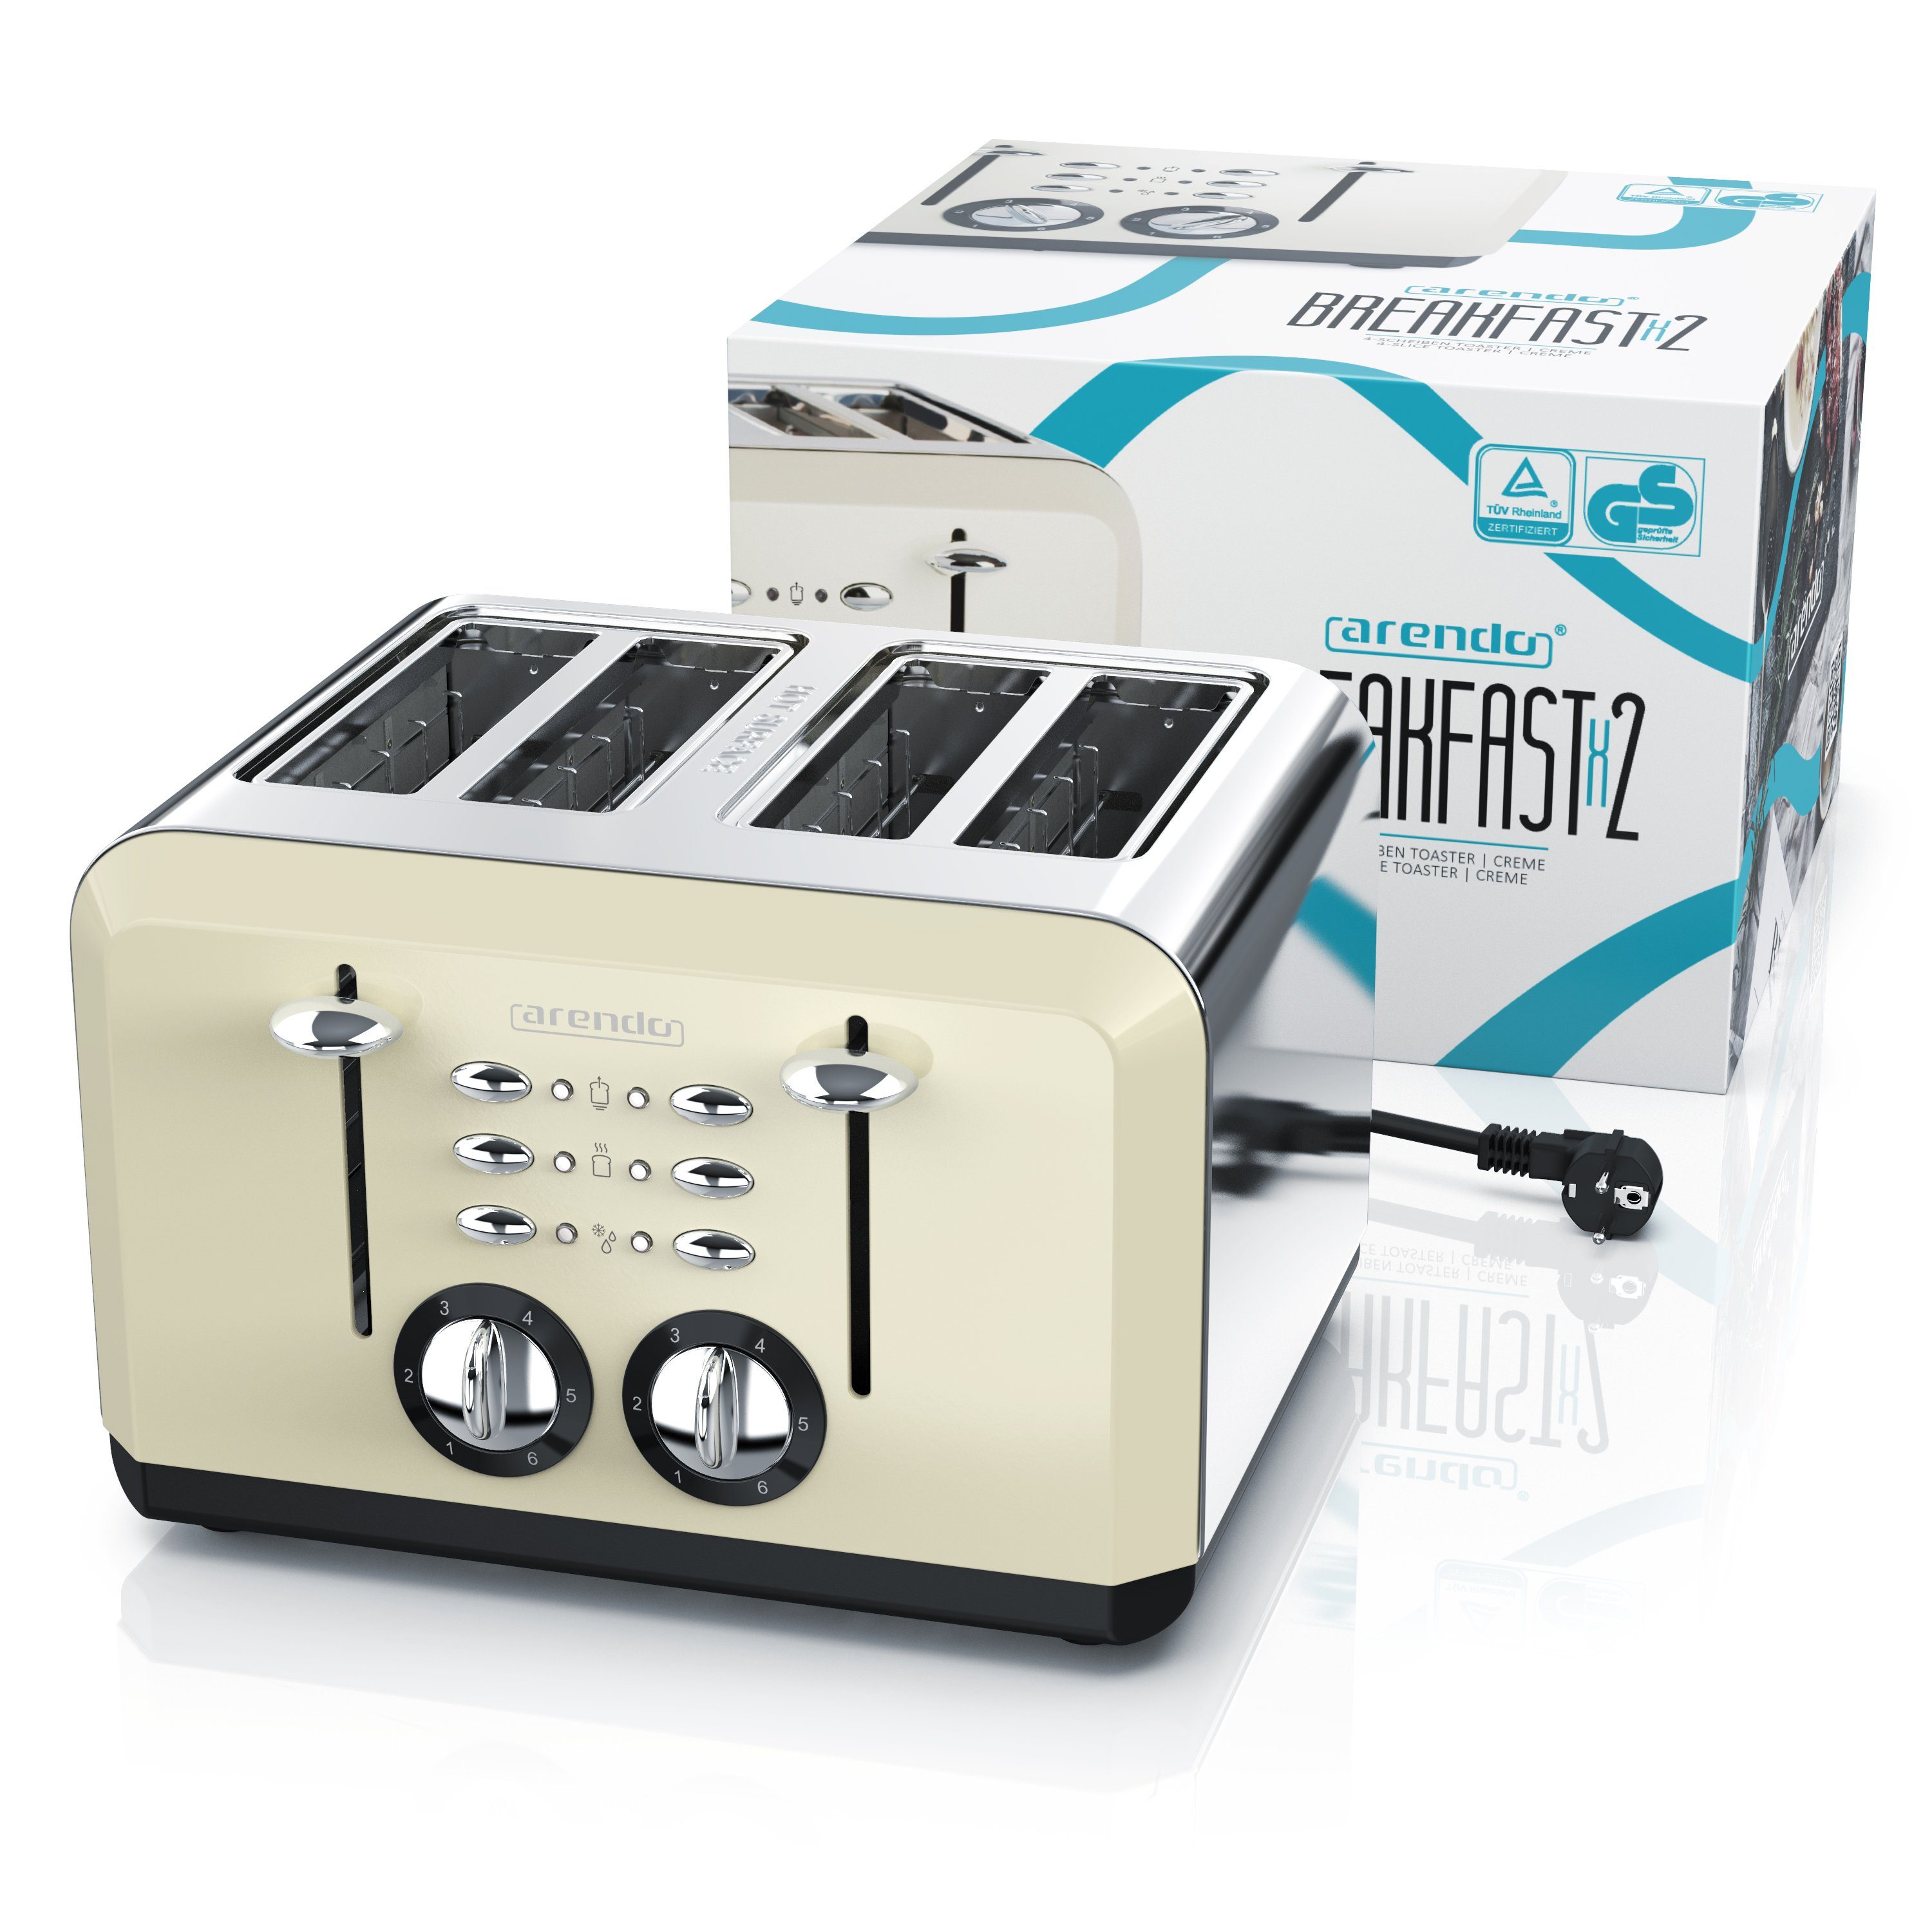 Edelstahl, Automatik, Scheiben, 1630 4 W, 4 Toaster, kurze für Schlitze, beige Doppelwandgehäuse Arendo Wärmeisolierendes